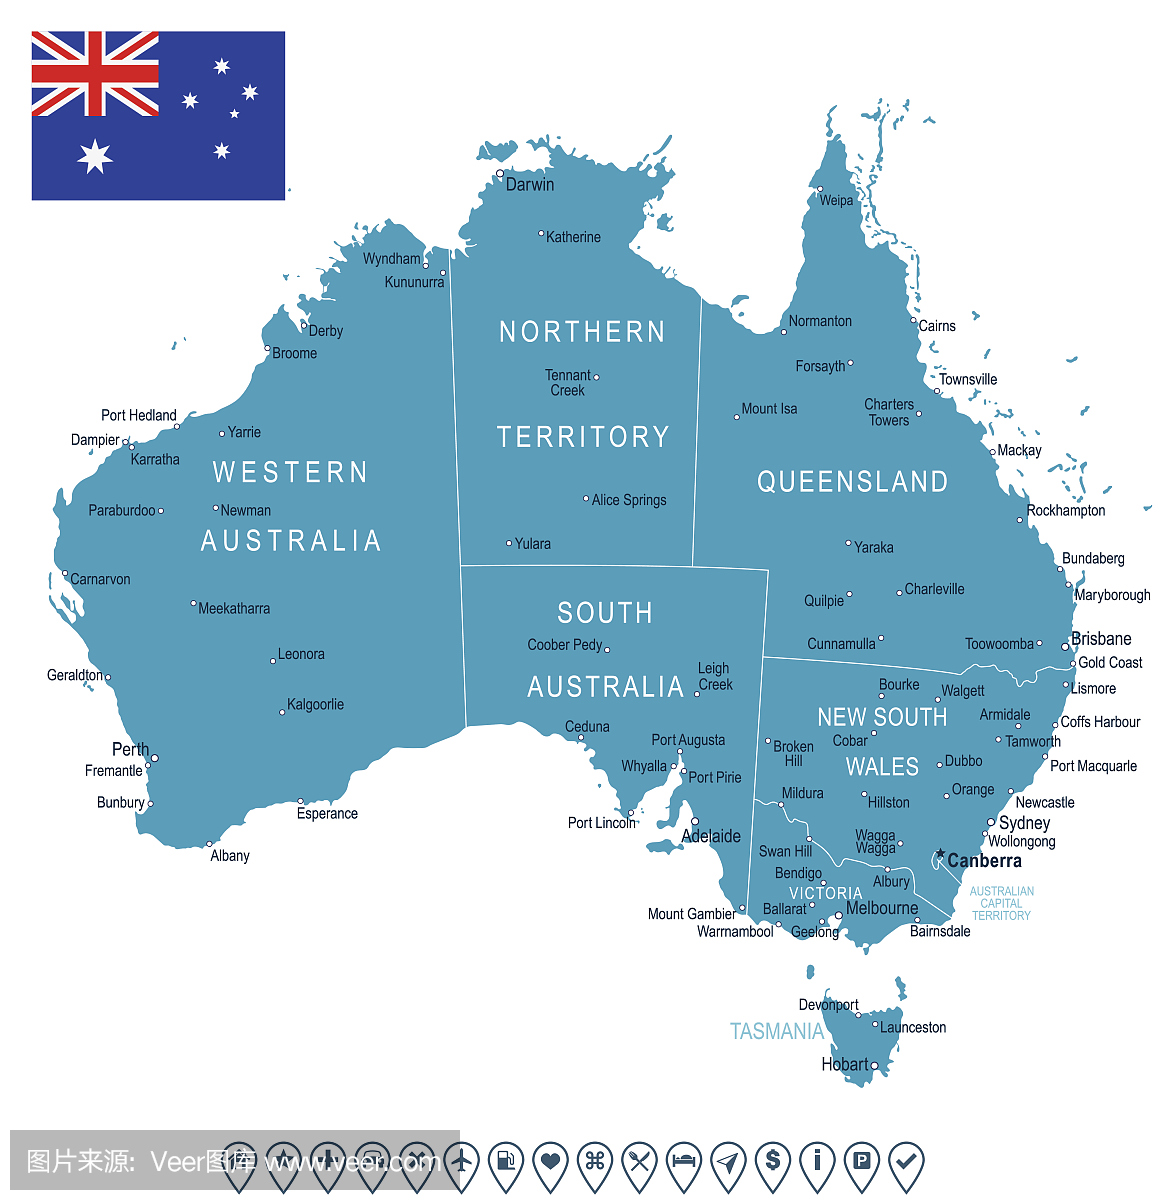 澳大利亚 - 地图和国旗?插图